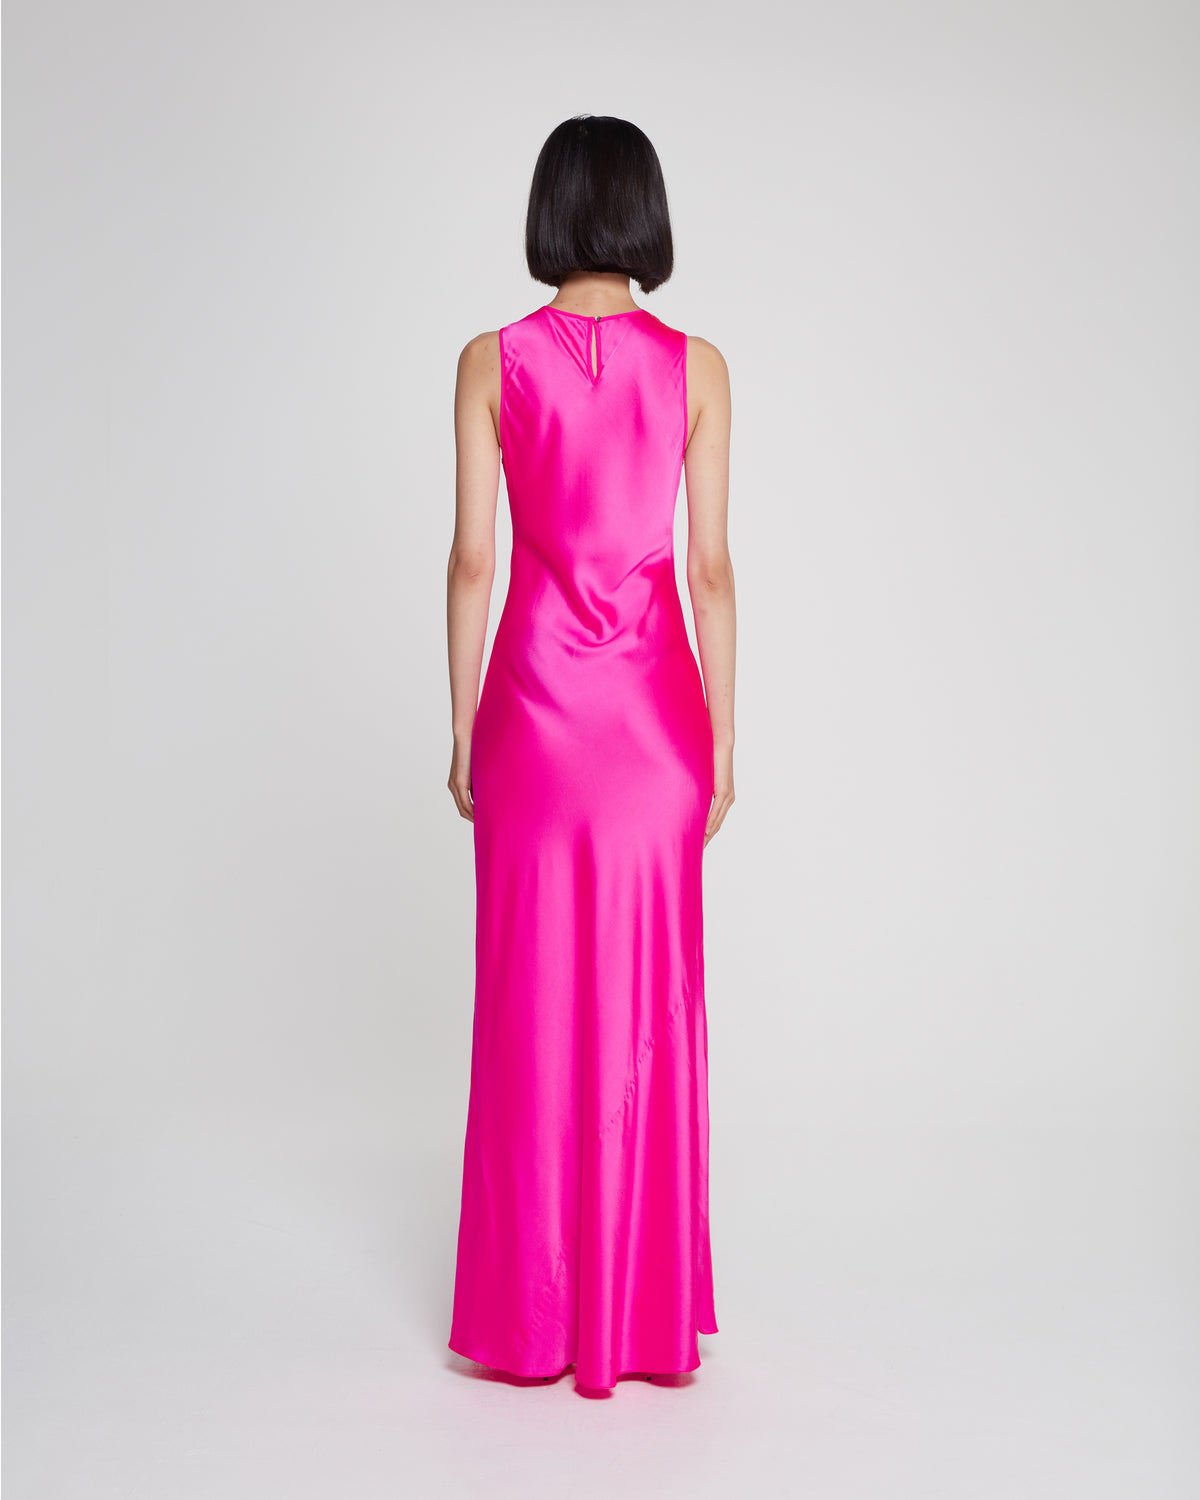 Silk Tank Dress - Shocking Pink